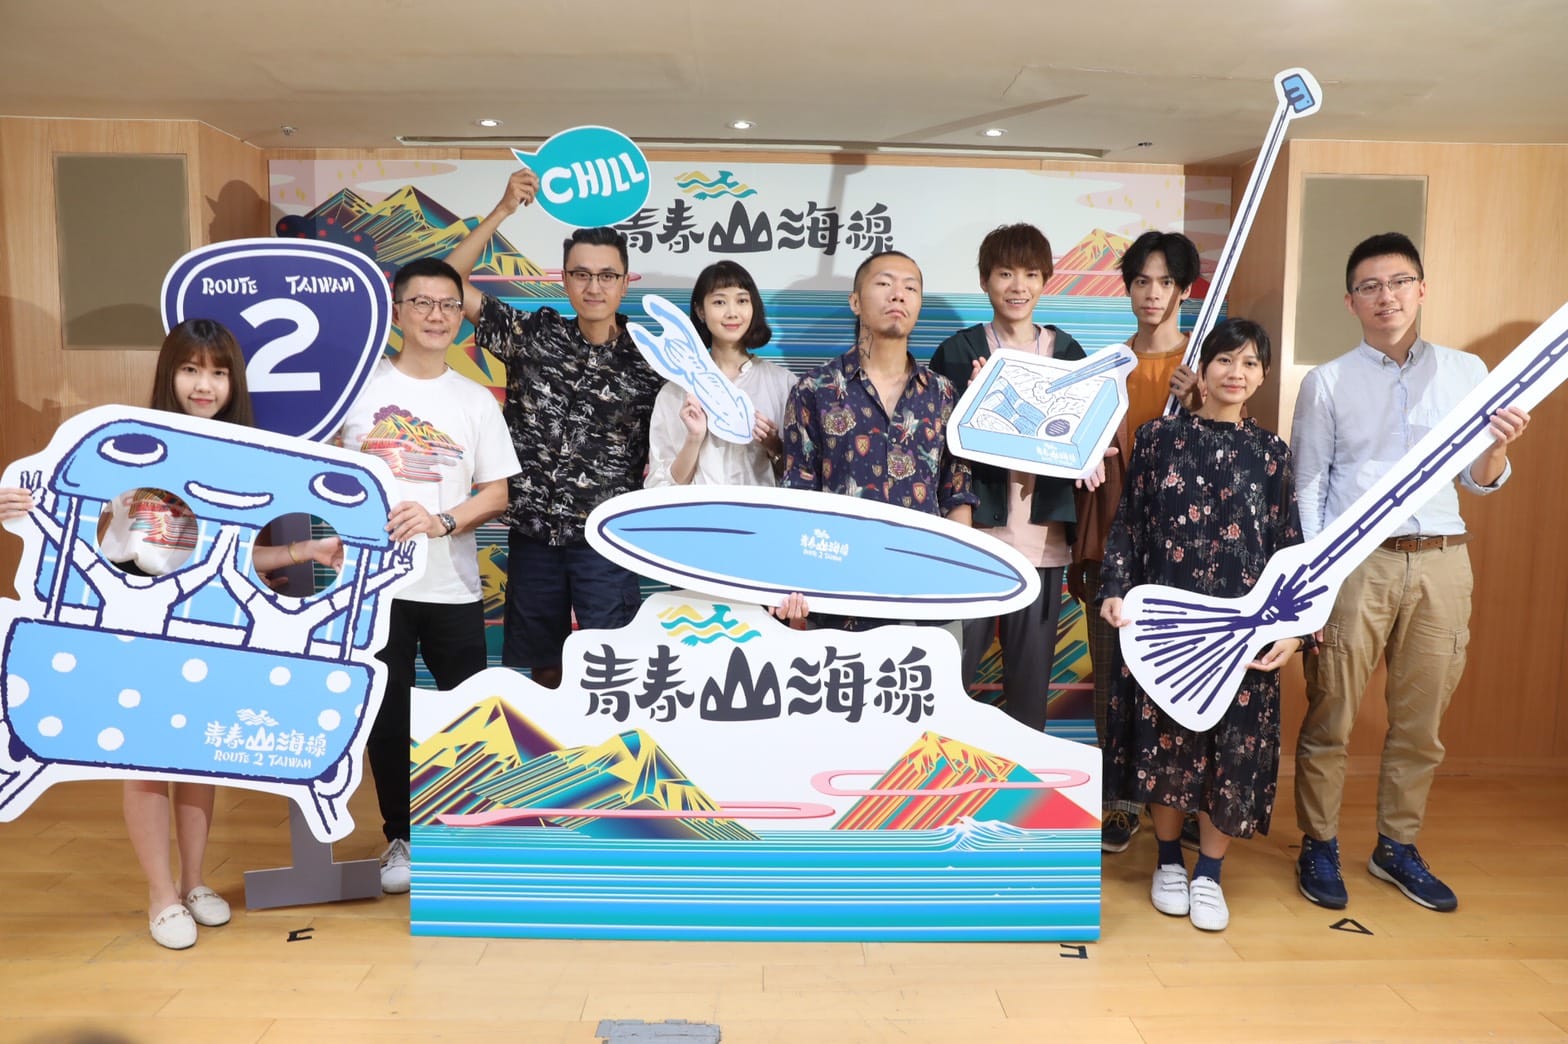 「青春山海線 Route 2 Taiwan」視覺標誌公布！創造新北海岸線新價值